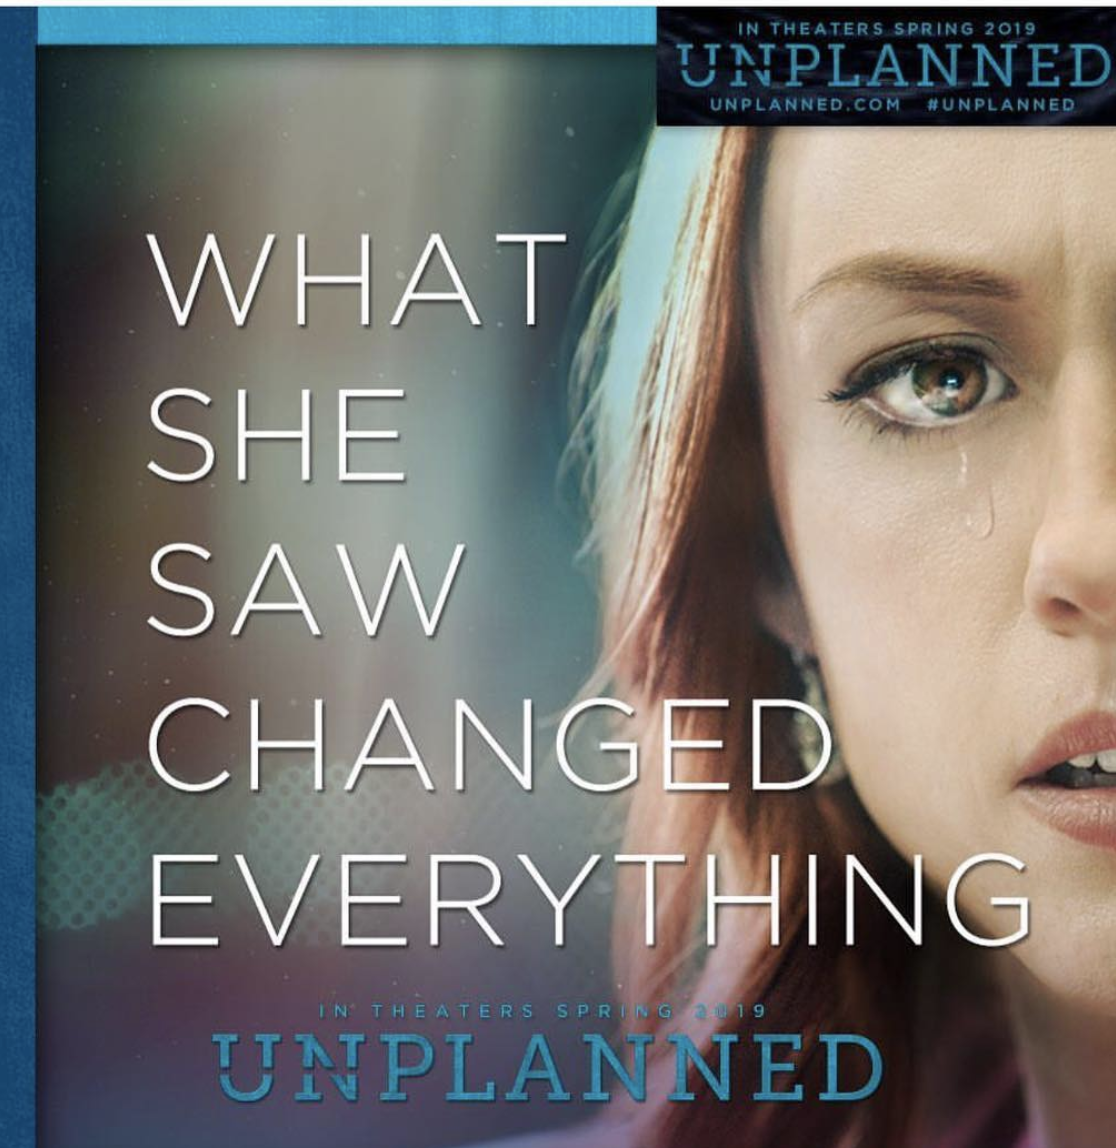 Esce in Italia "Unplanned", il film Pro-Vita